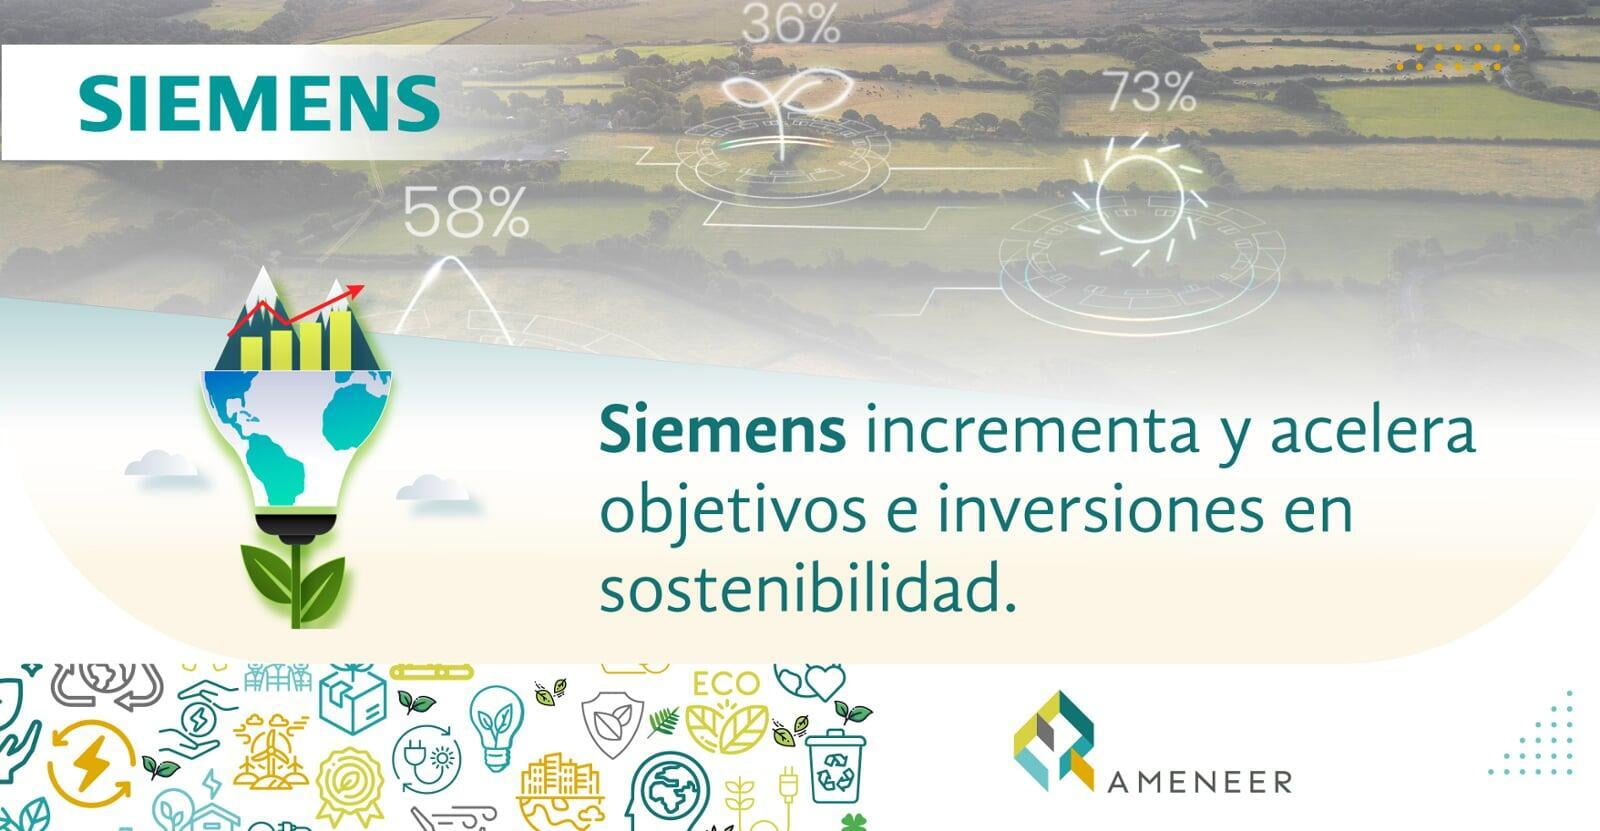 Siemens incrementa y acelera objetivos e inversiones en sostenibilidad